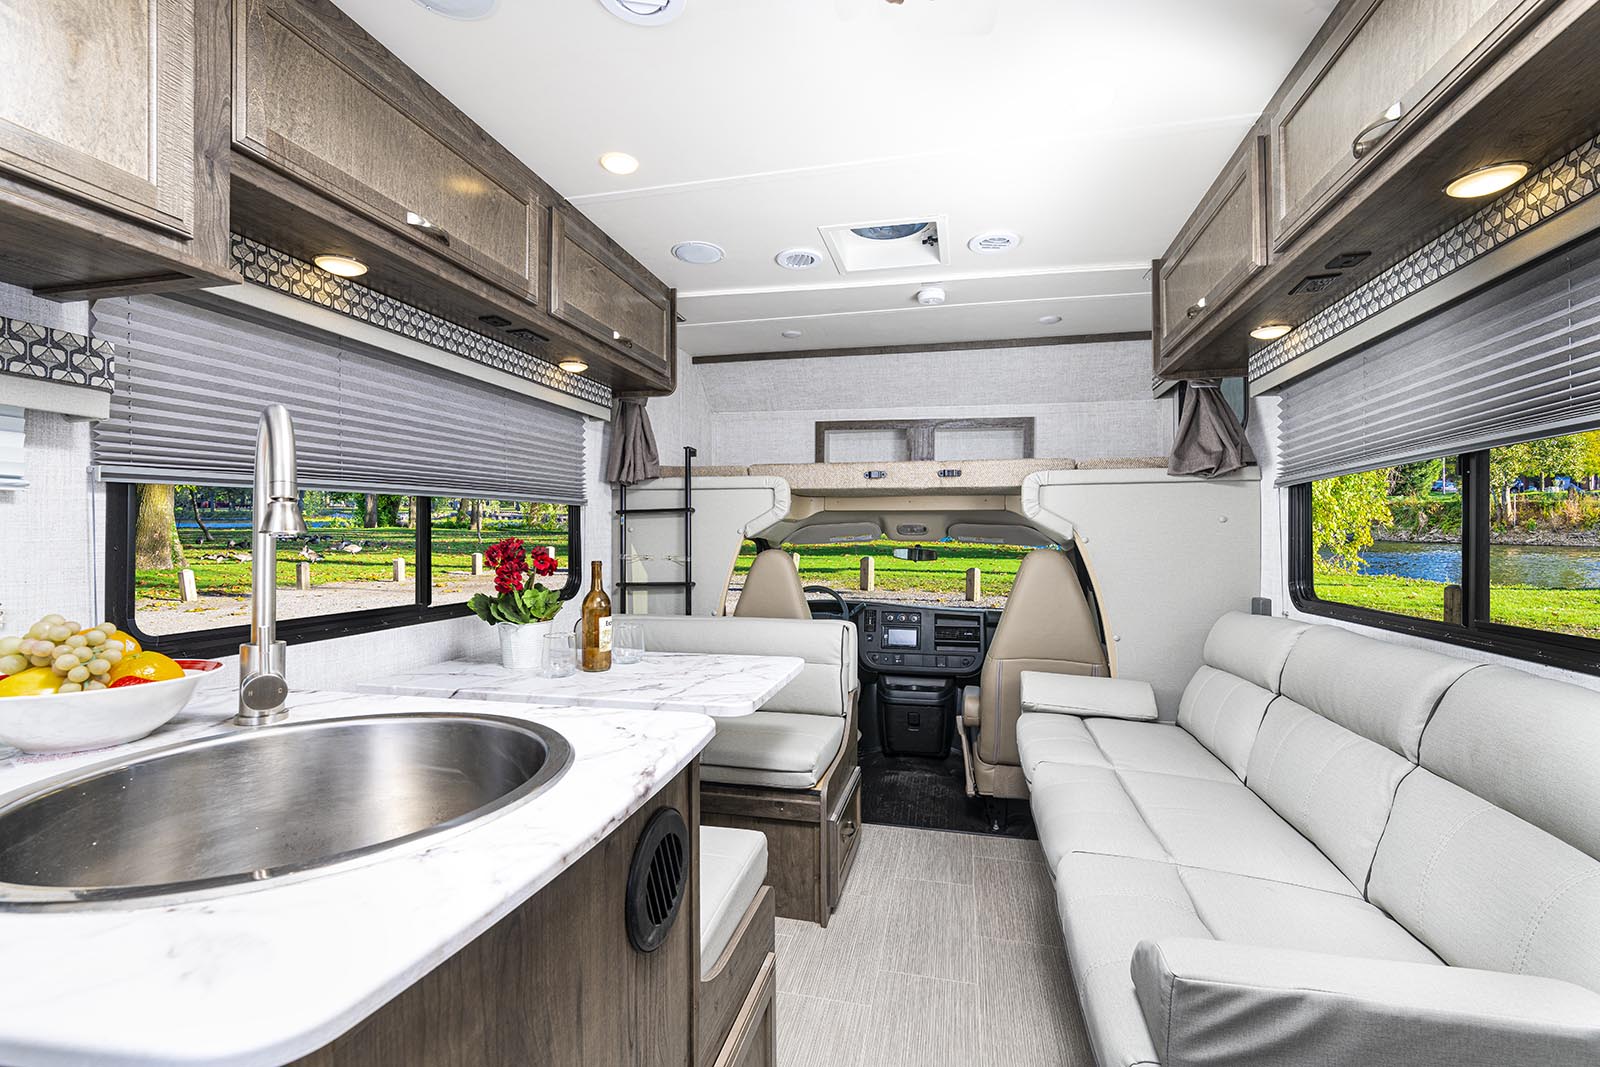 New interior decor for Gulf Stream Coach motor homes